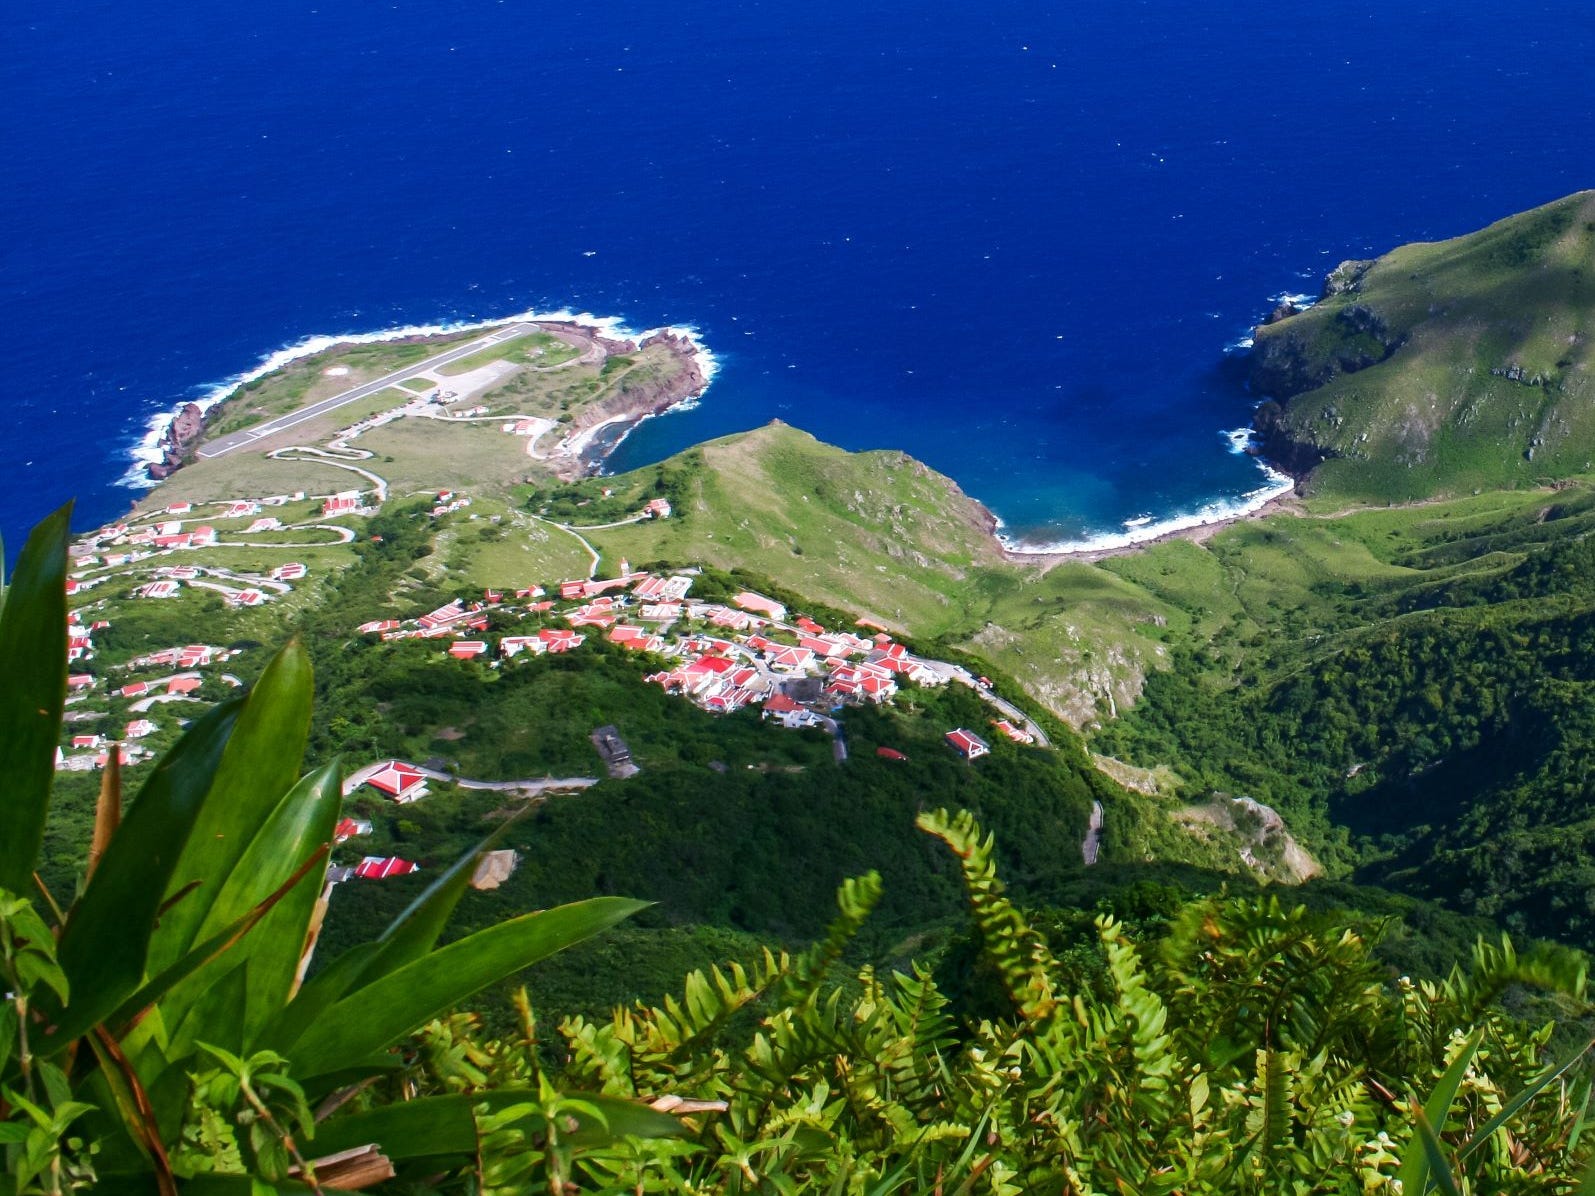 Eine Draufsicht auf die Insel Saba mit dem Flughafen oben links im Bild und dem blauen Meer im Hintergrund.